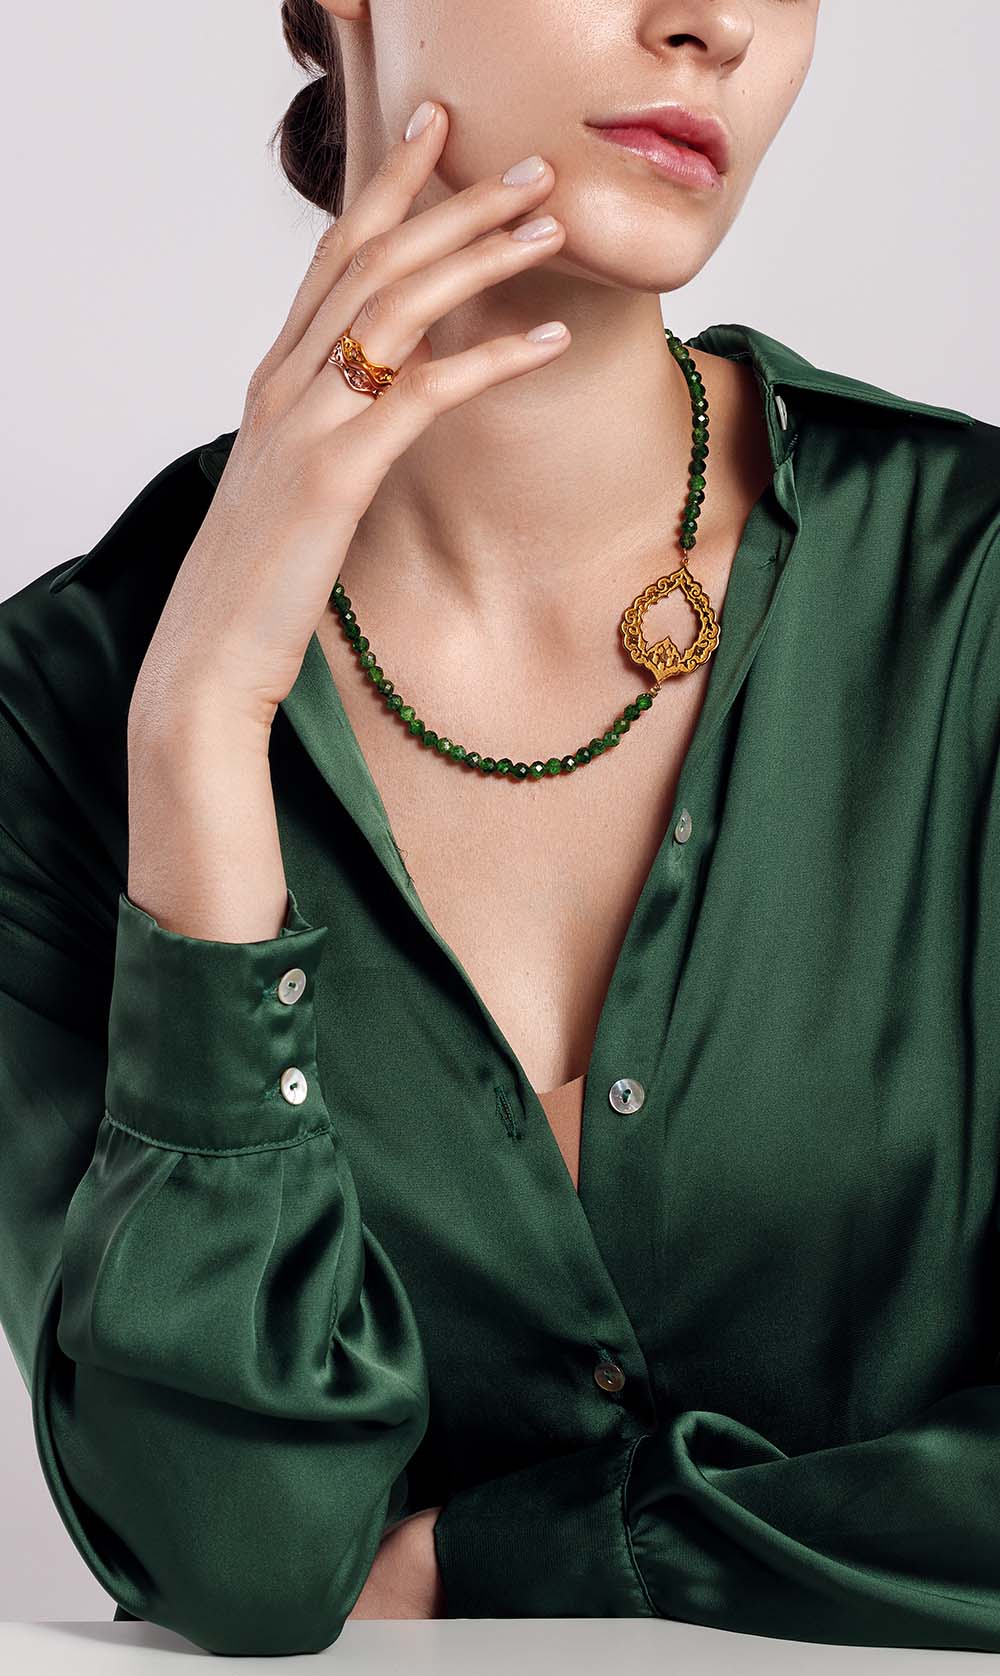 SanazDoost » Sanaz Doost Jewelry | Buy Gold Jewelry Online